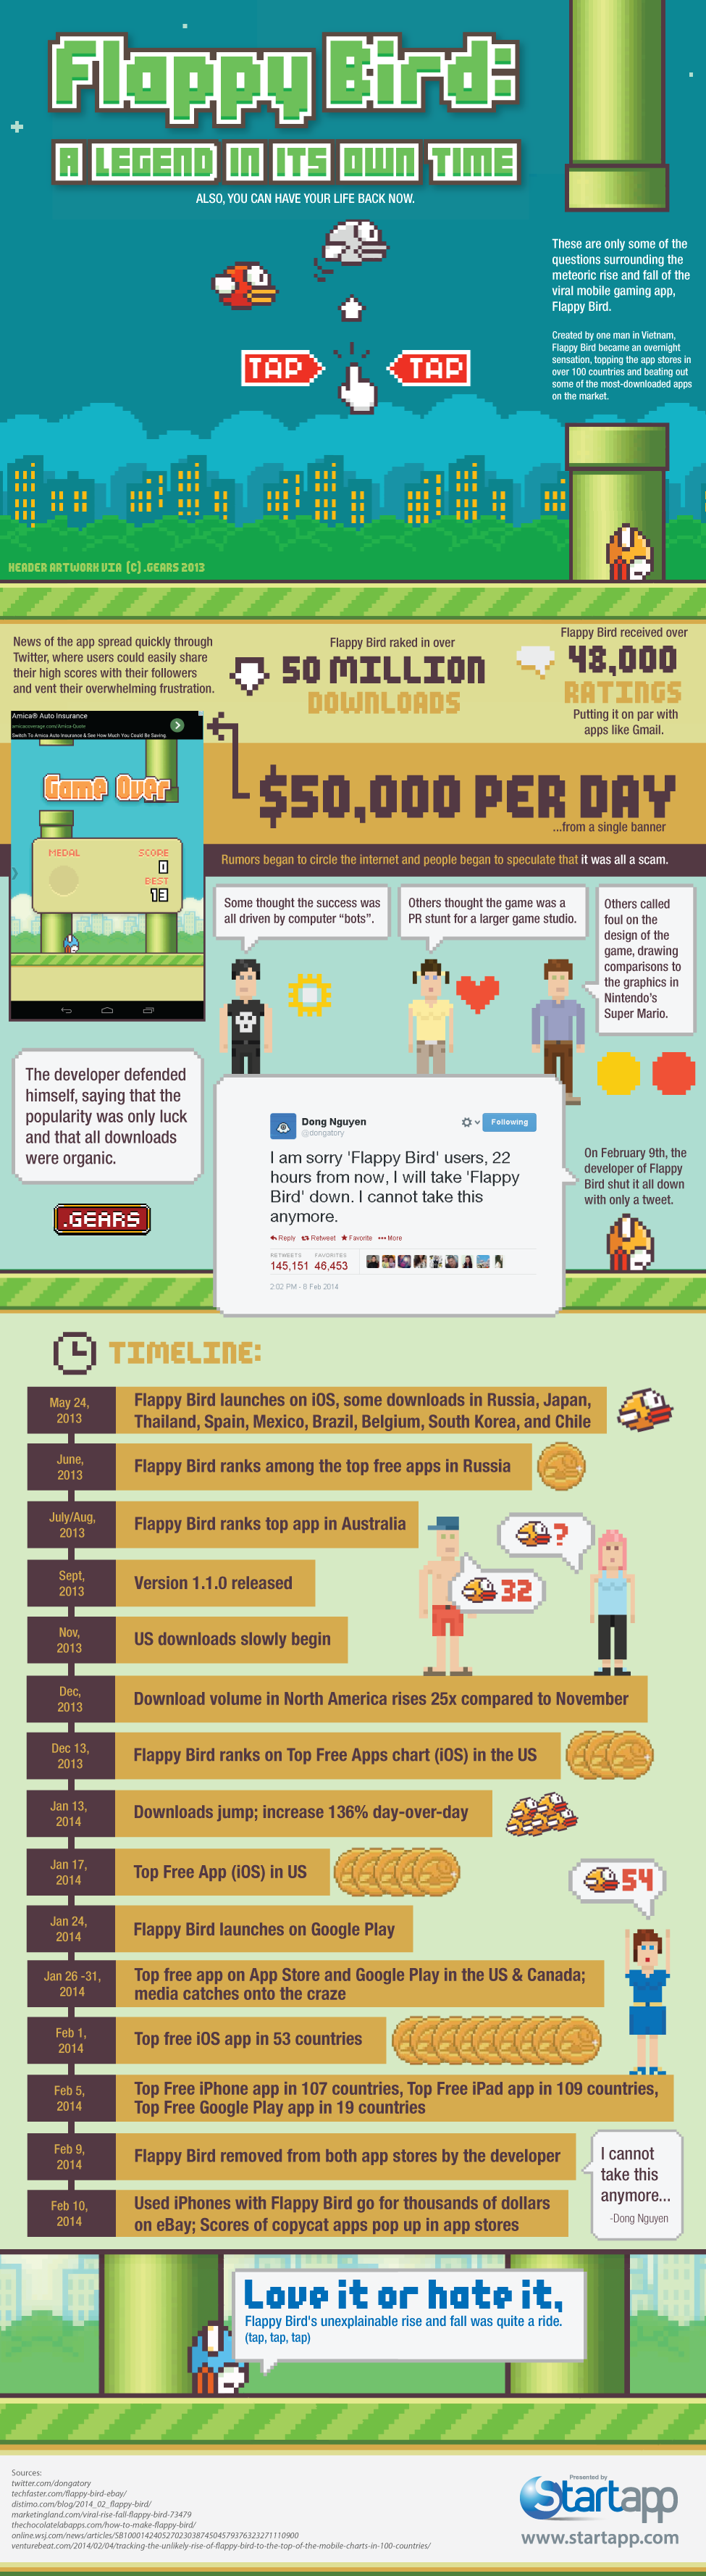 flappy-bird-infographic